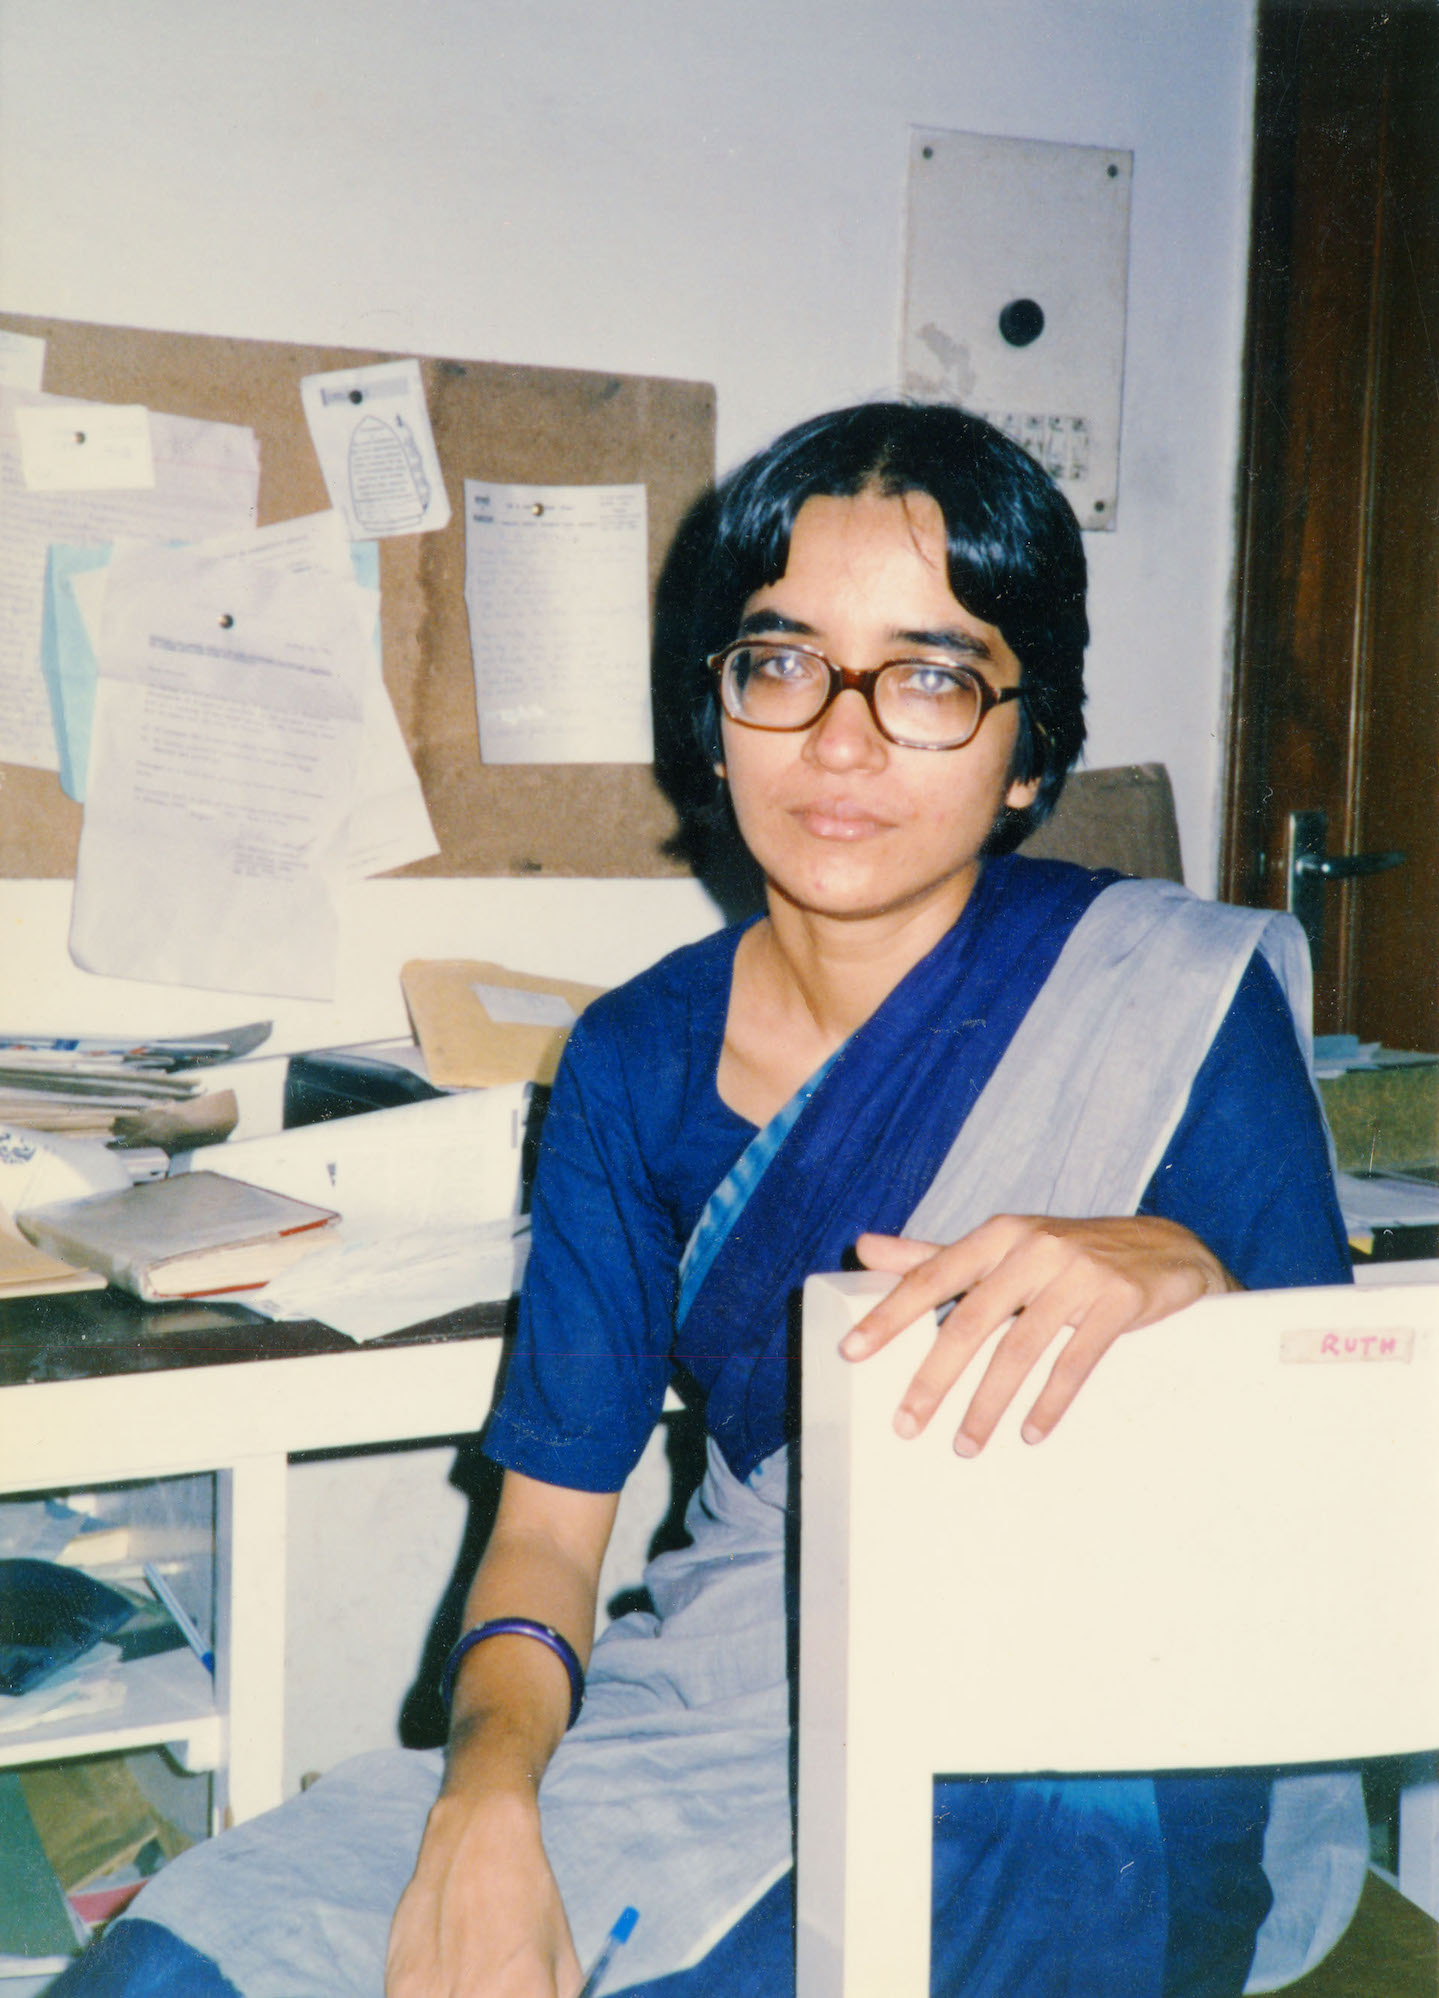 Ruth Vanita at the Manushi office, Lajpat Nagar, New Delhi, mid 1980s. Photo courtesy of Ruth Vanita.